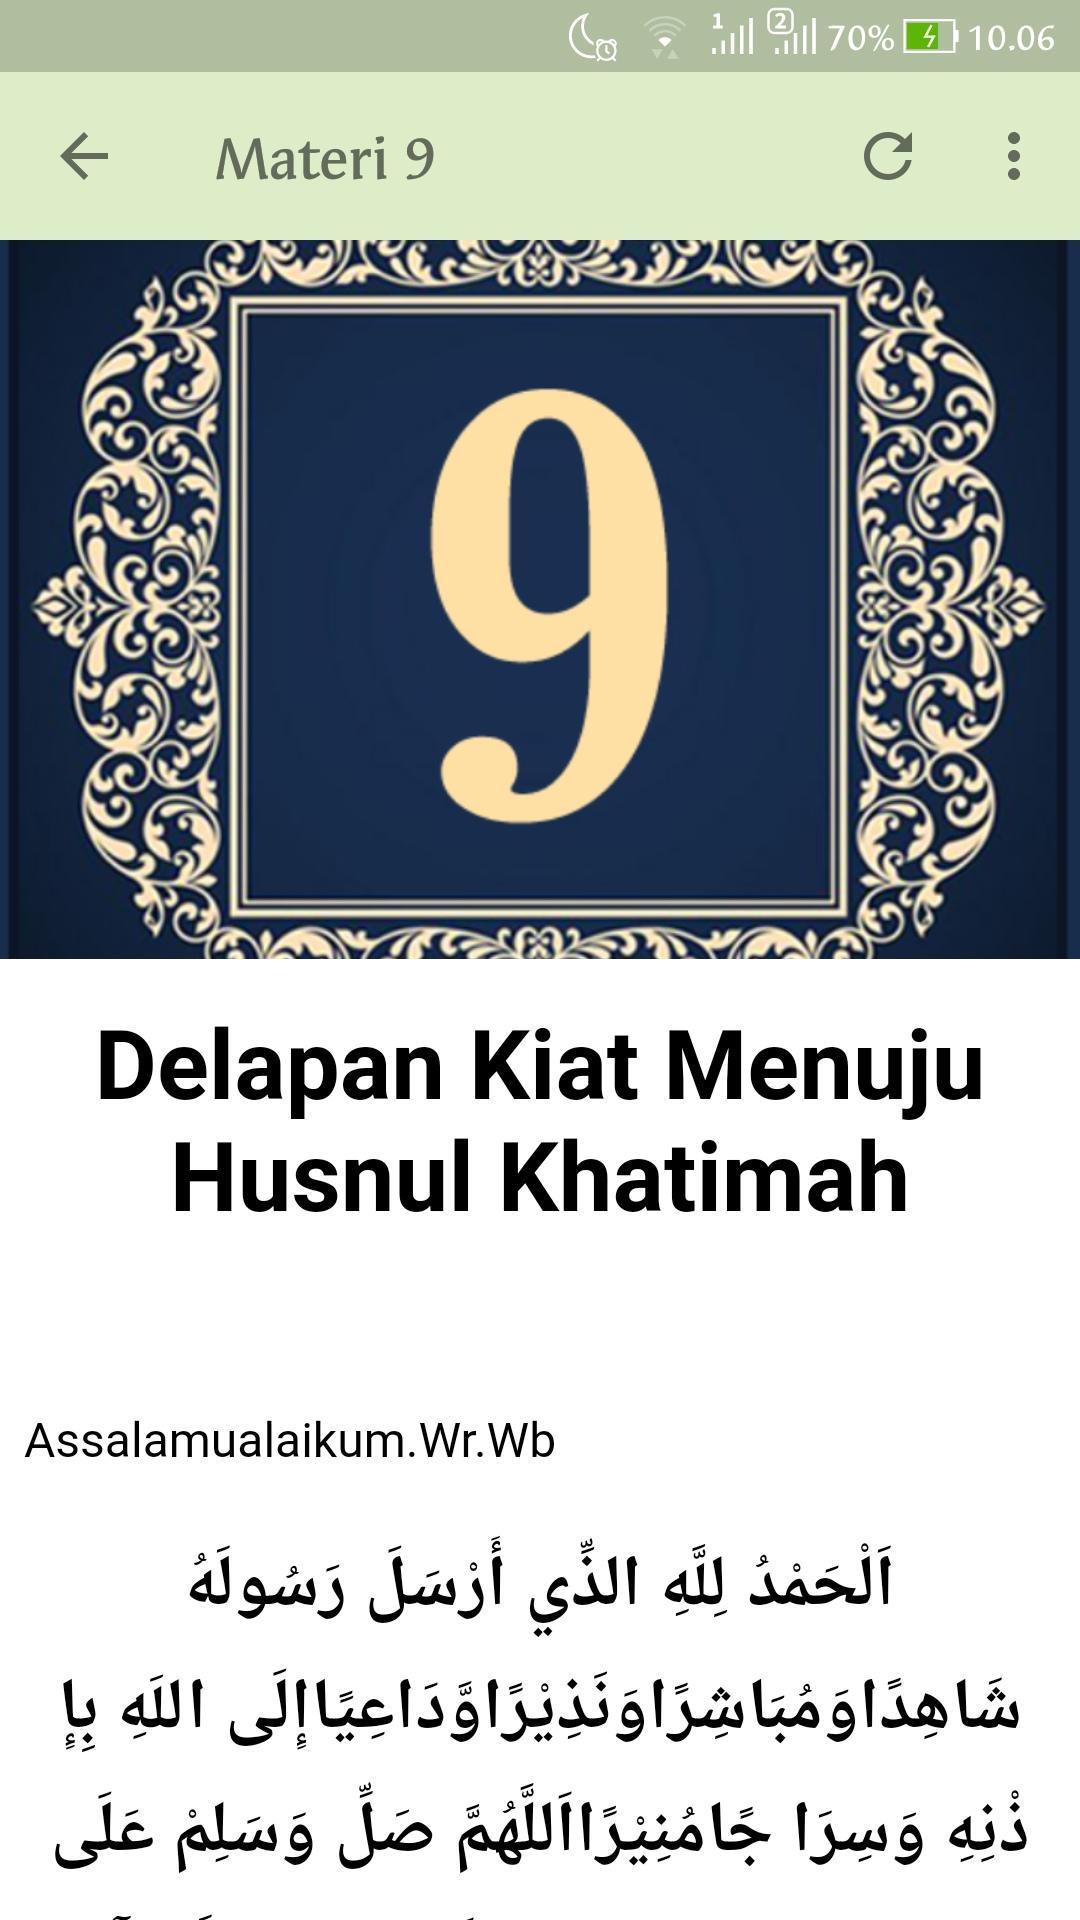 45 Materi Kultum Ramadhan 2020 For Android Apk Download